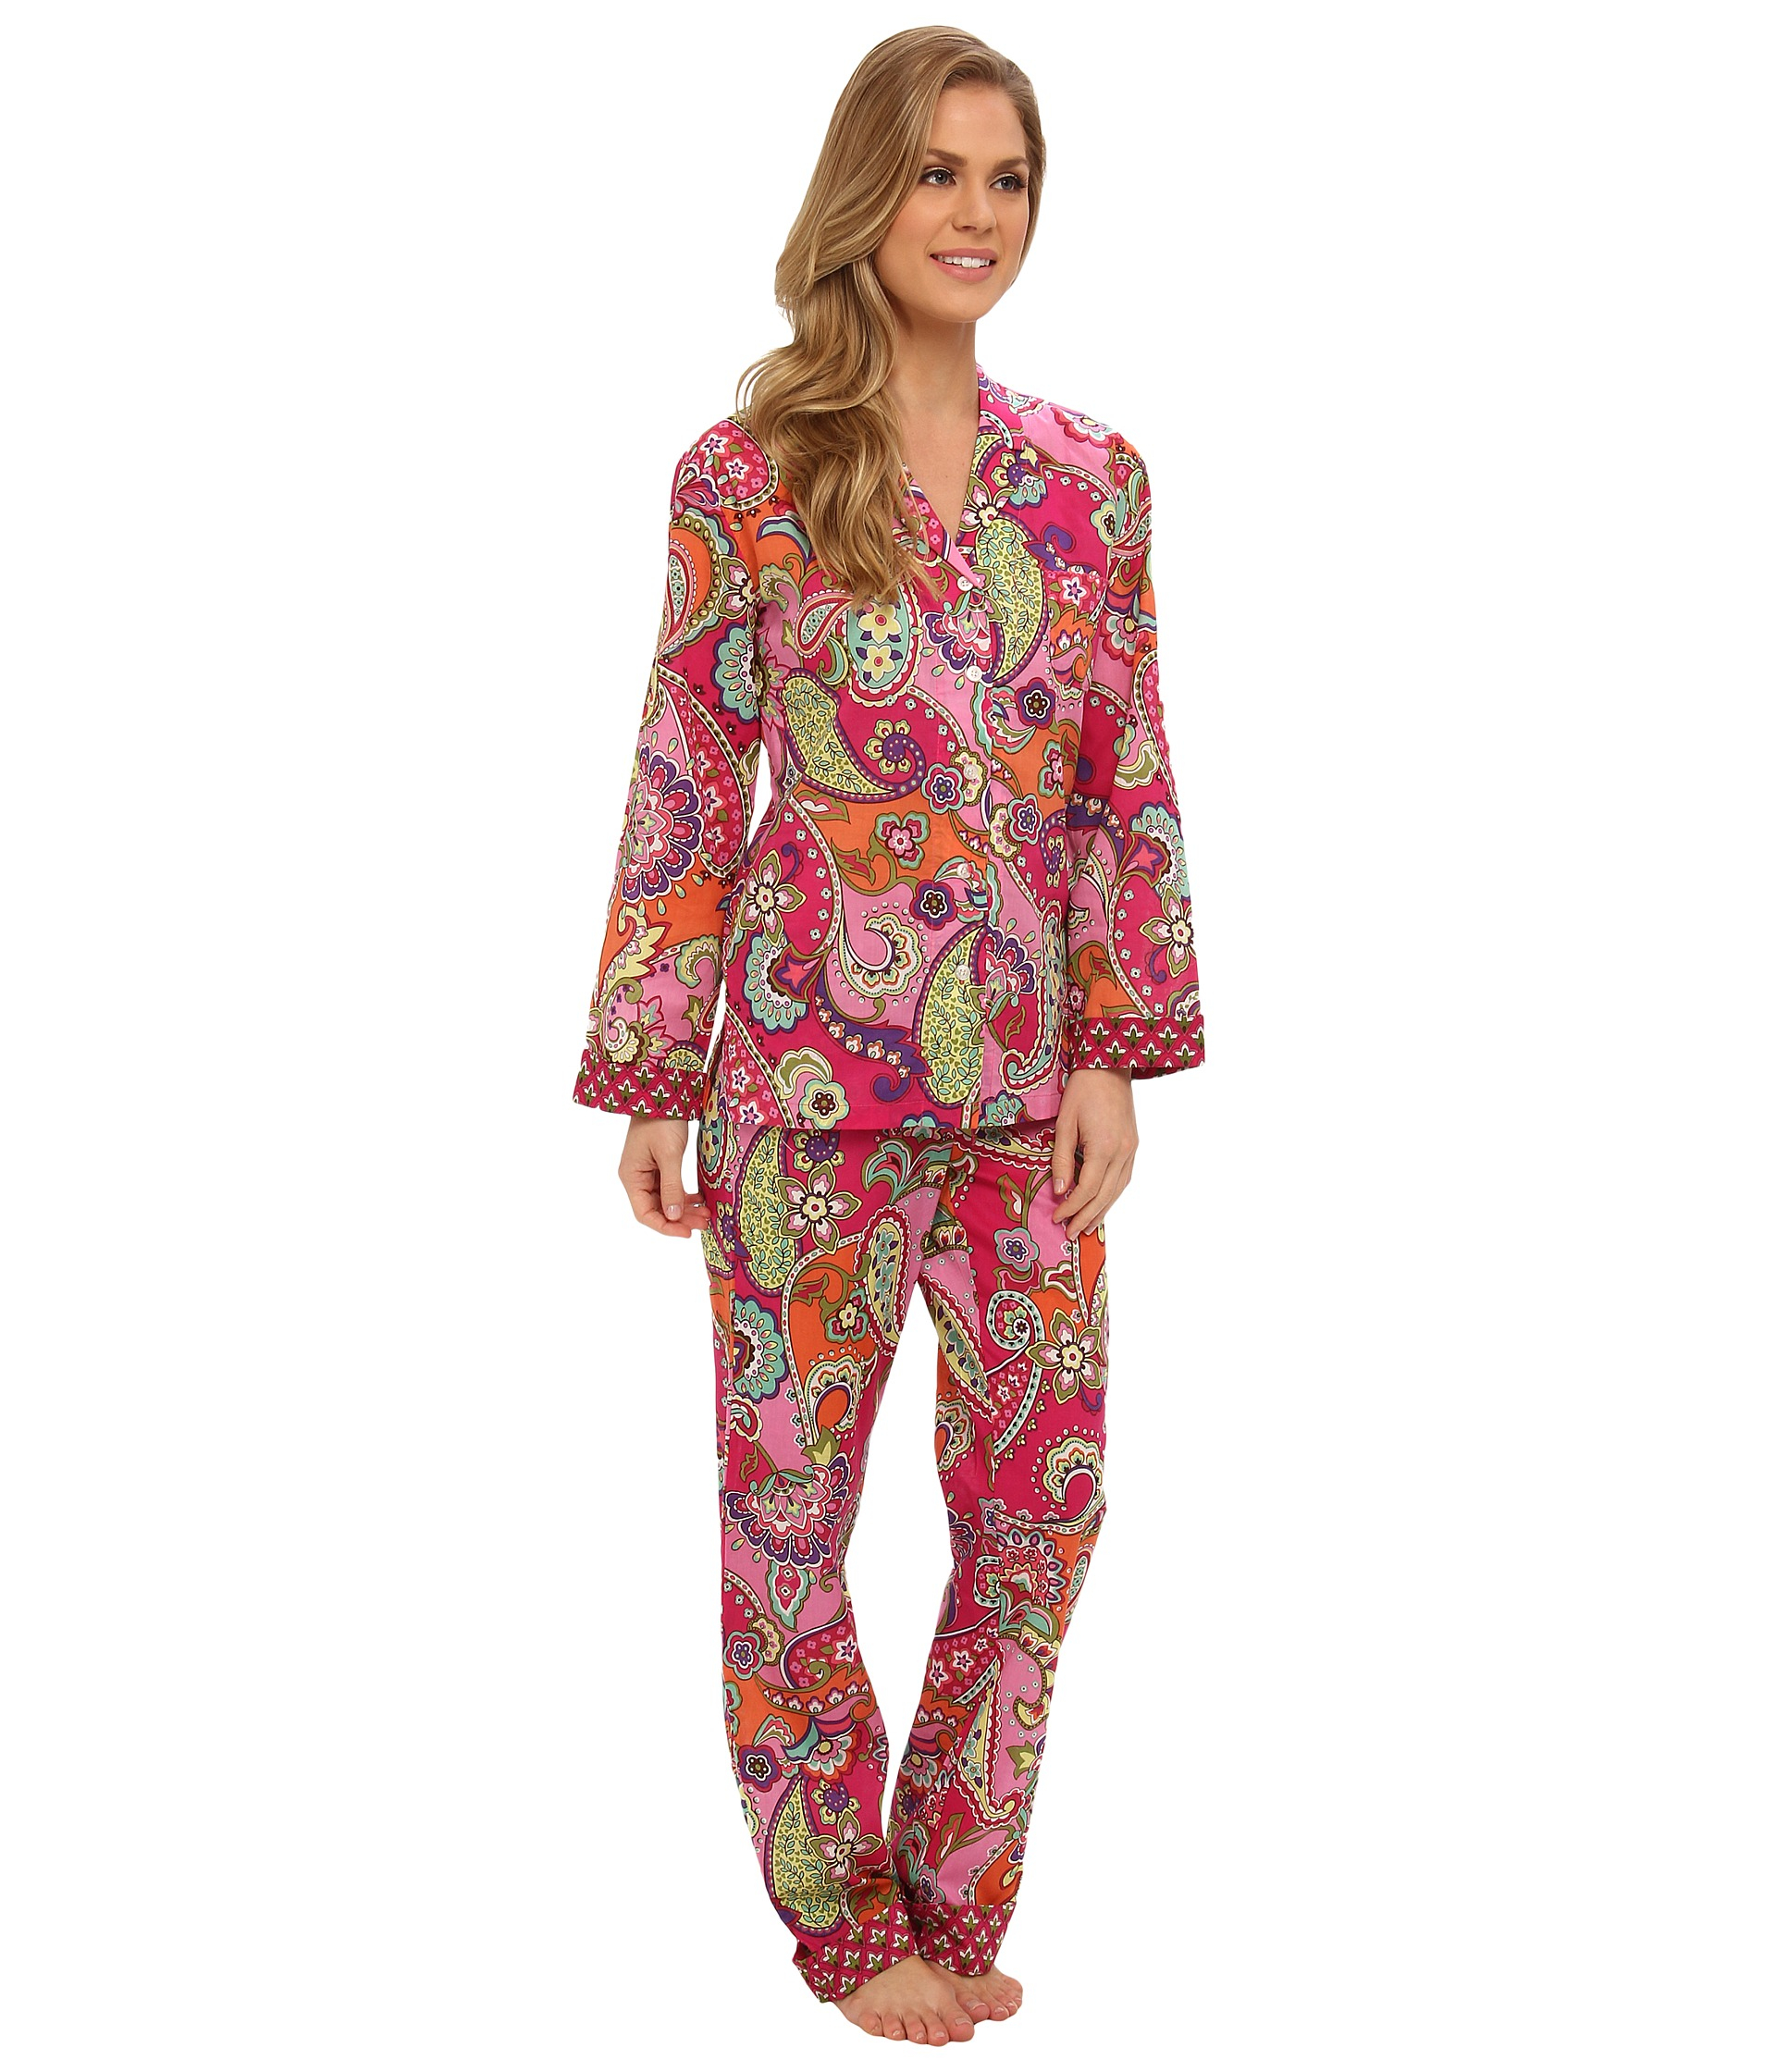 Lyst - Vera Bradley Short-sleeve Knit Pajama Tee in Pink